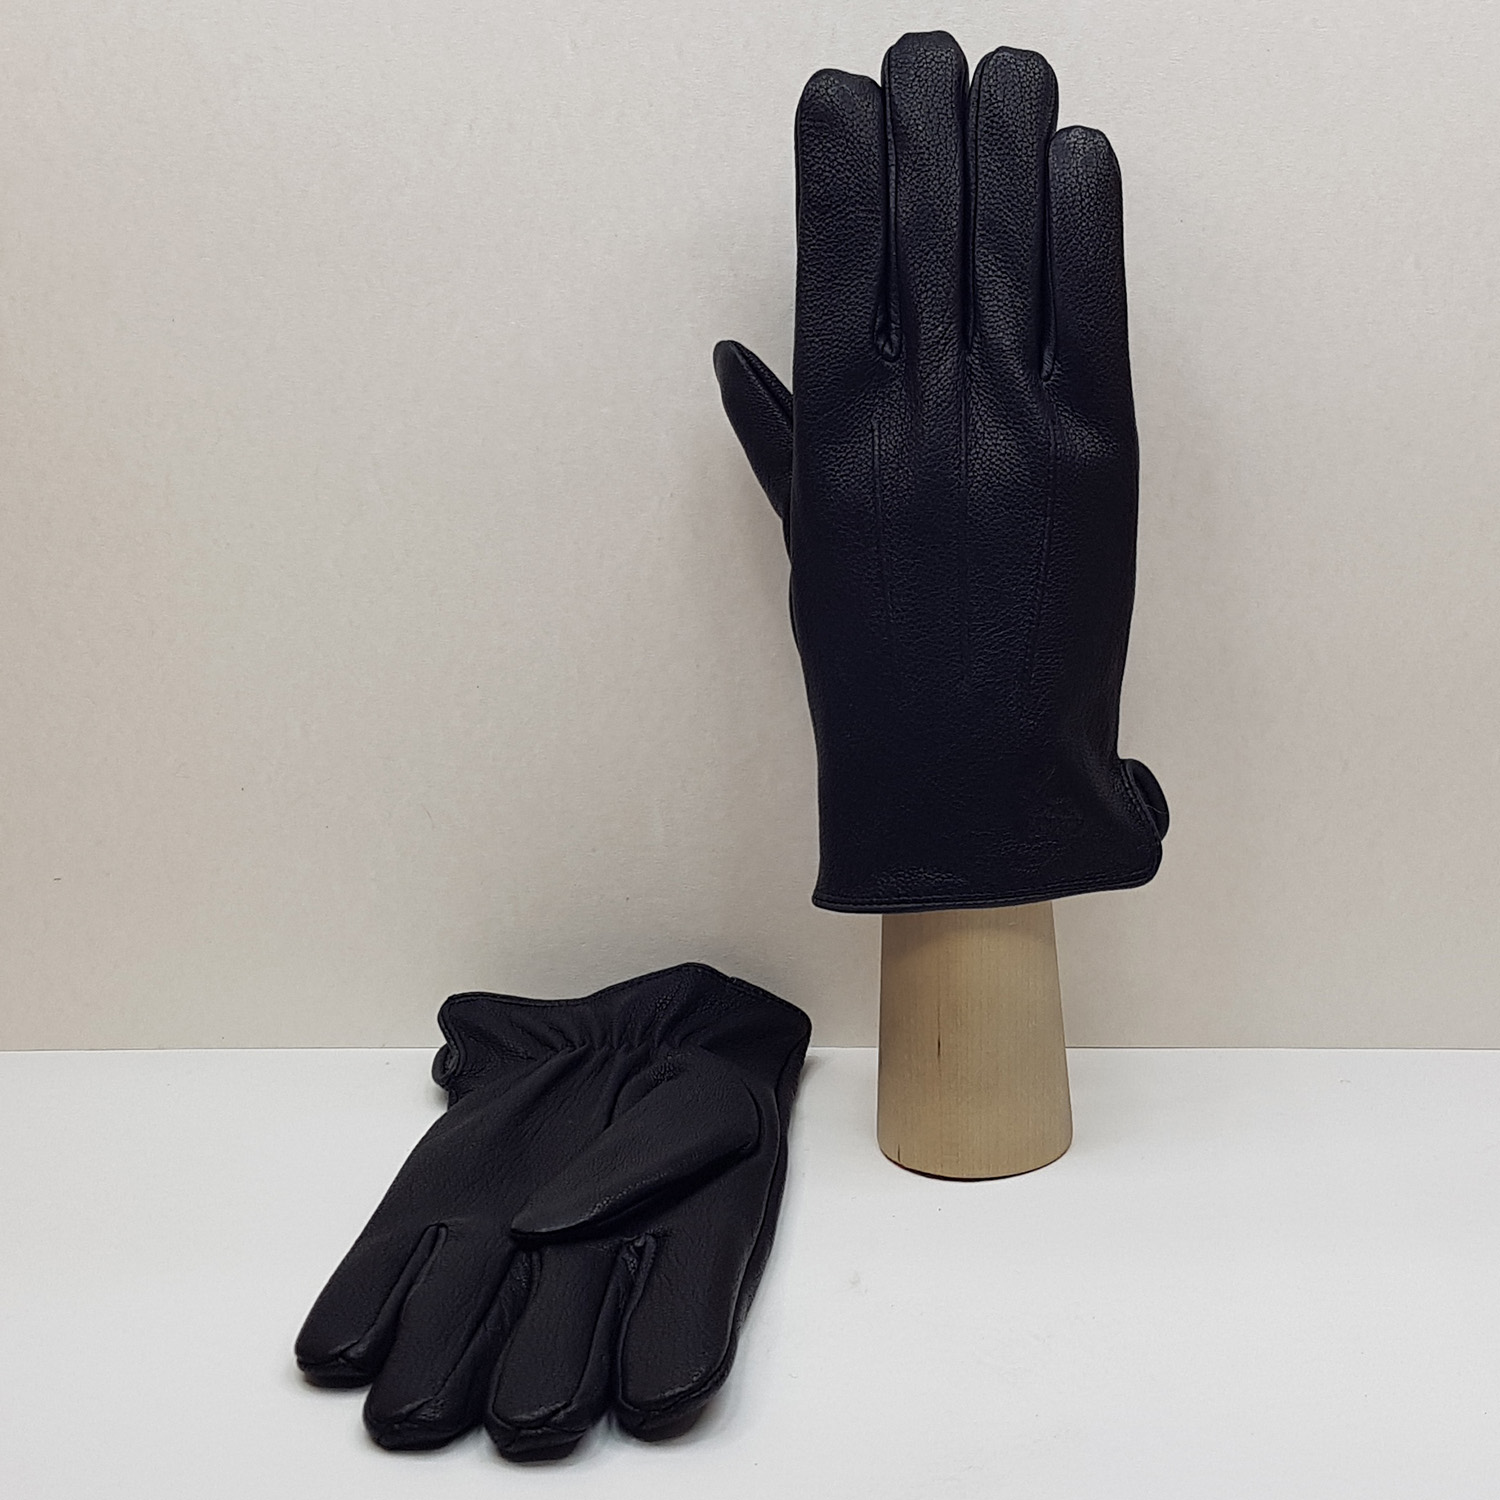 Мужские перчатки кожаные с шерстяной подкладкой №6 (Упаковка 5 шт.)